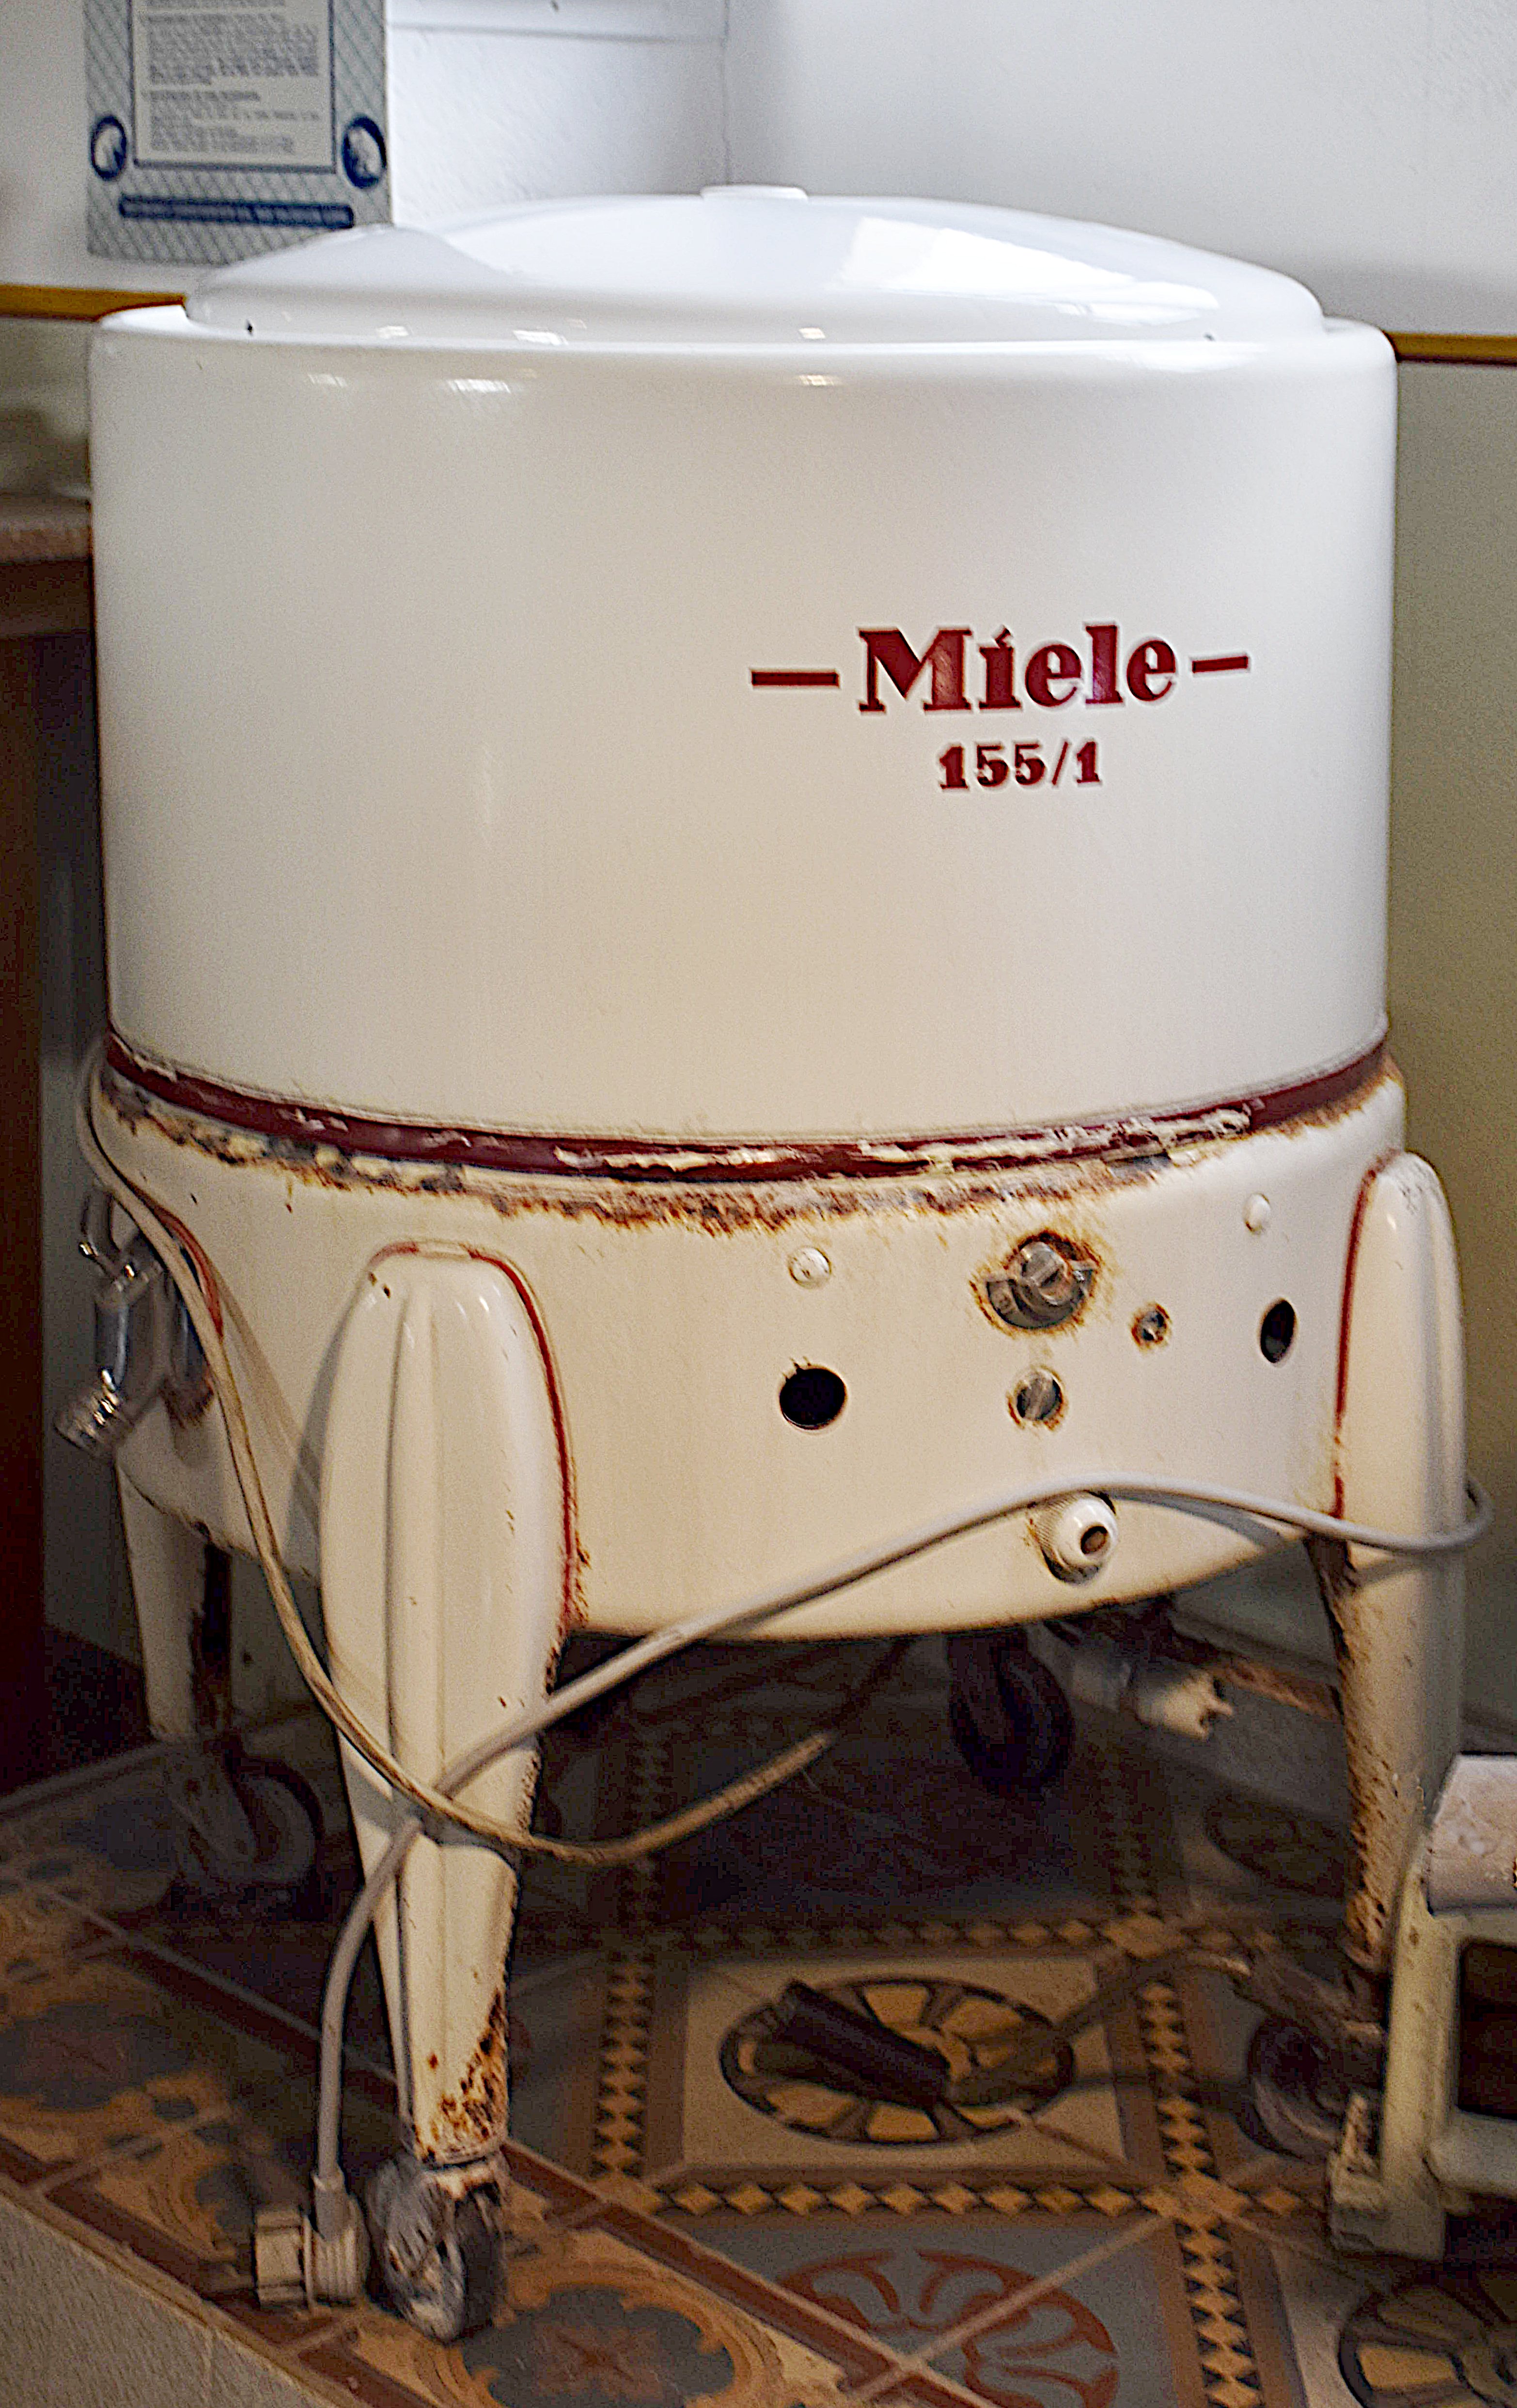 Miele Waschmaschine 155/1 (Freilichtmuseum Roscheider Hof CC0)